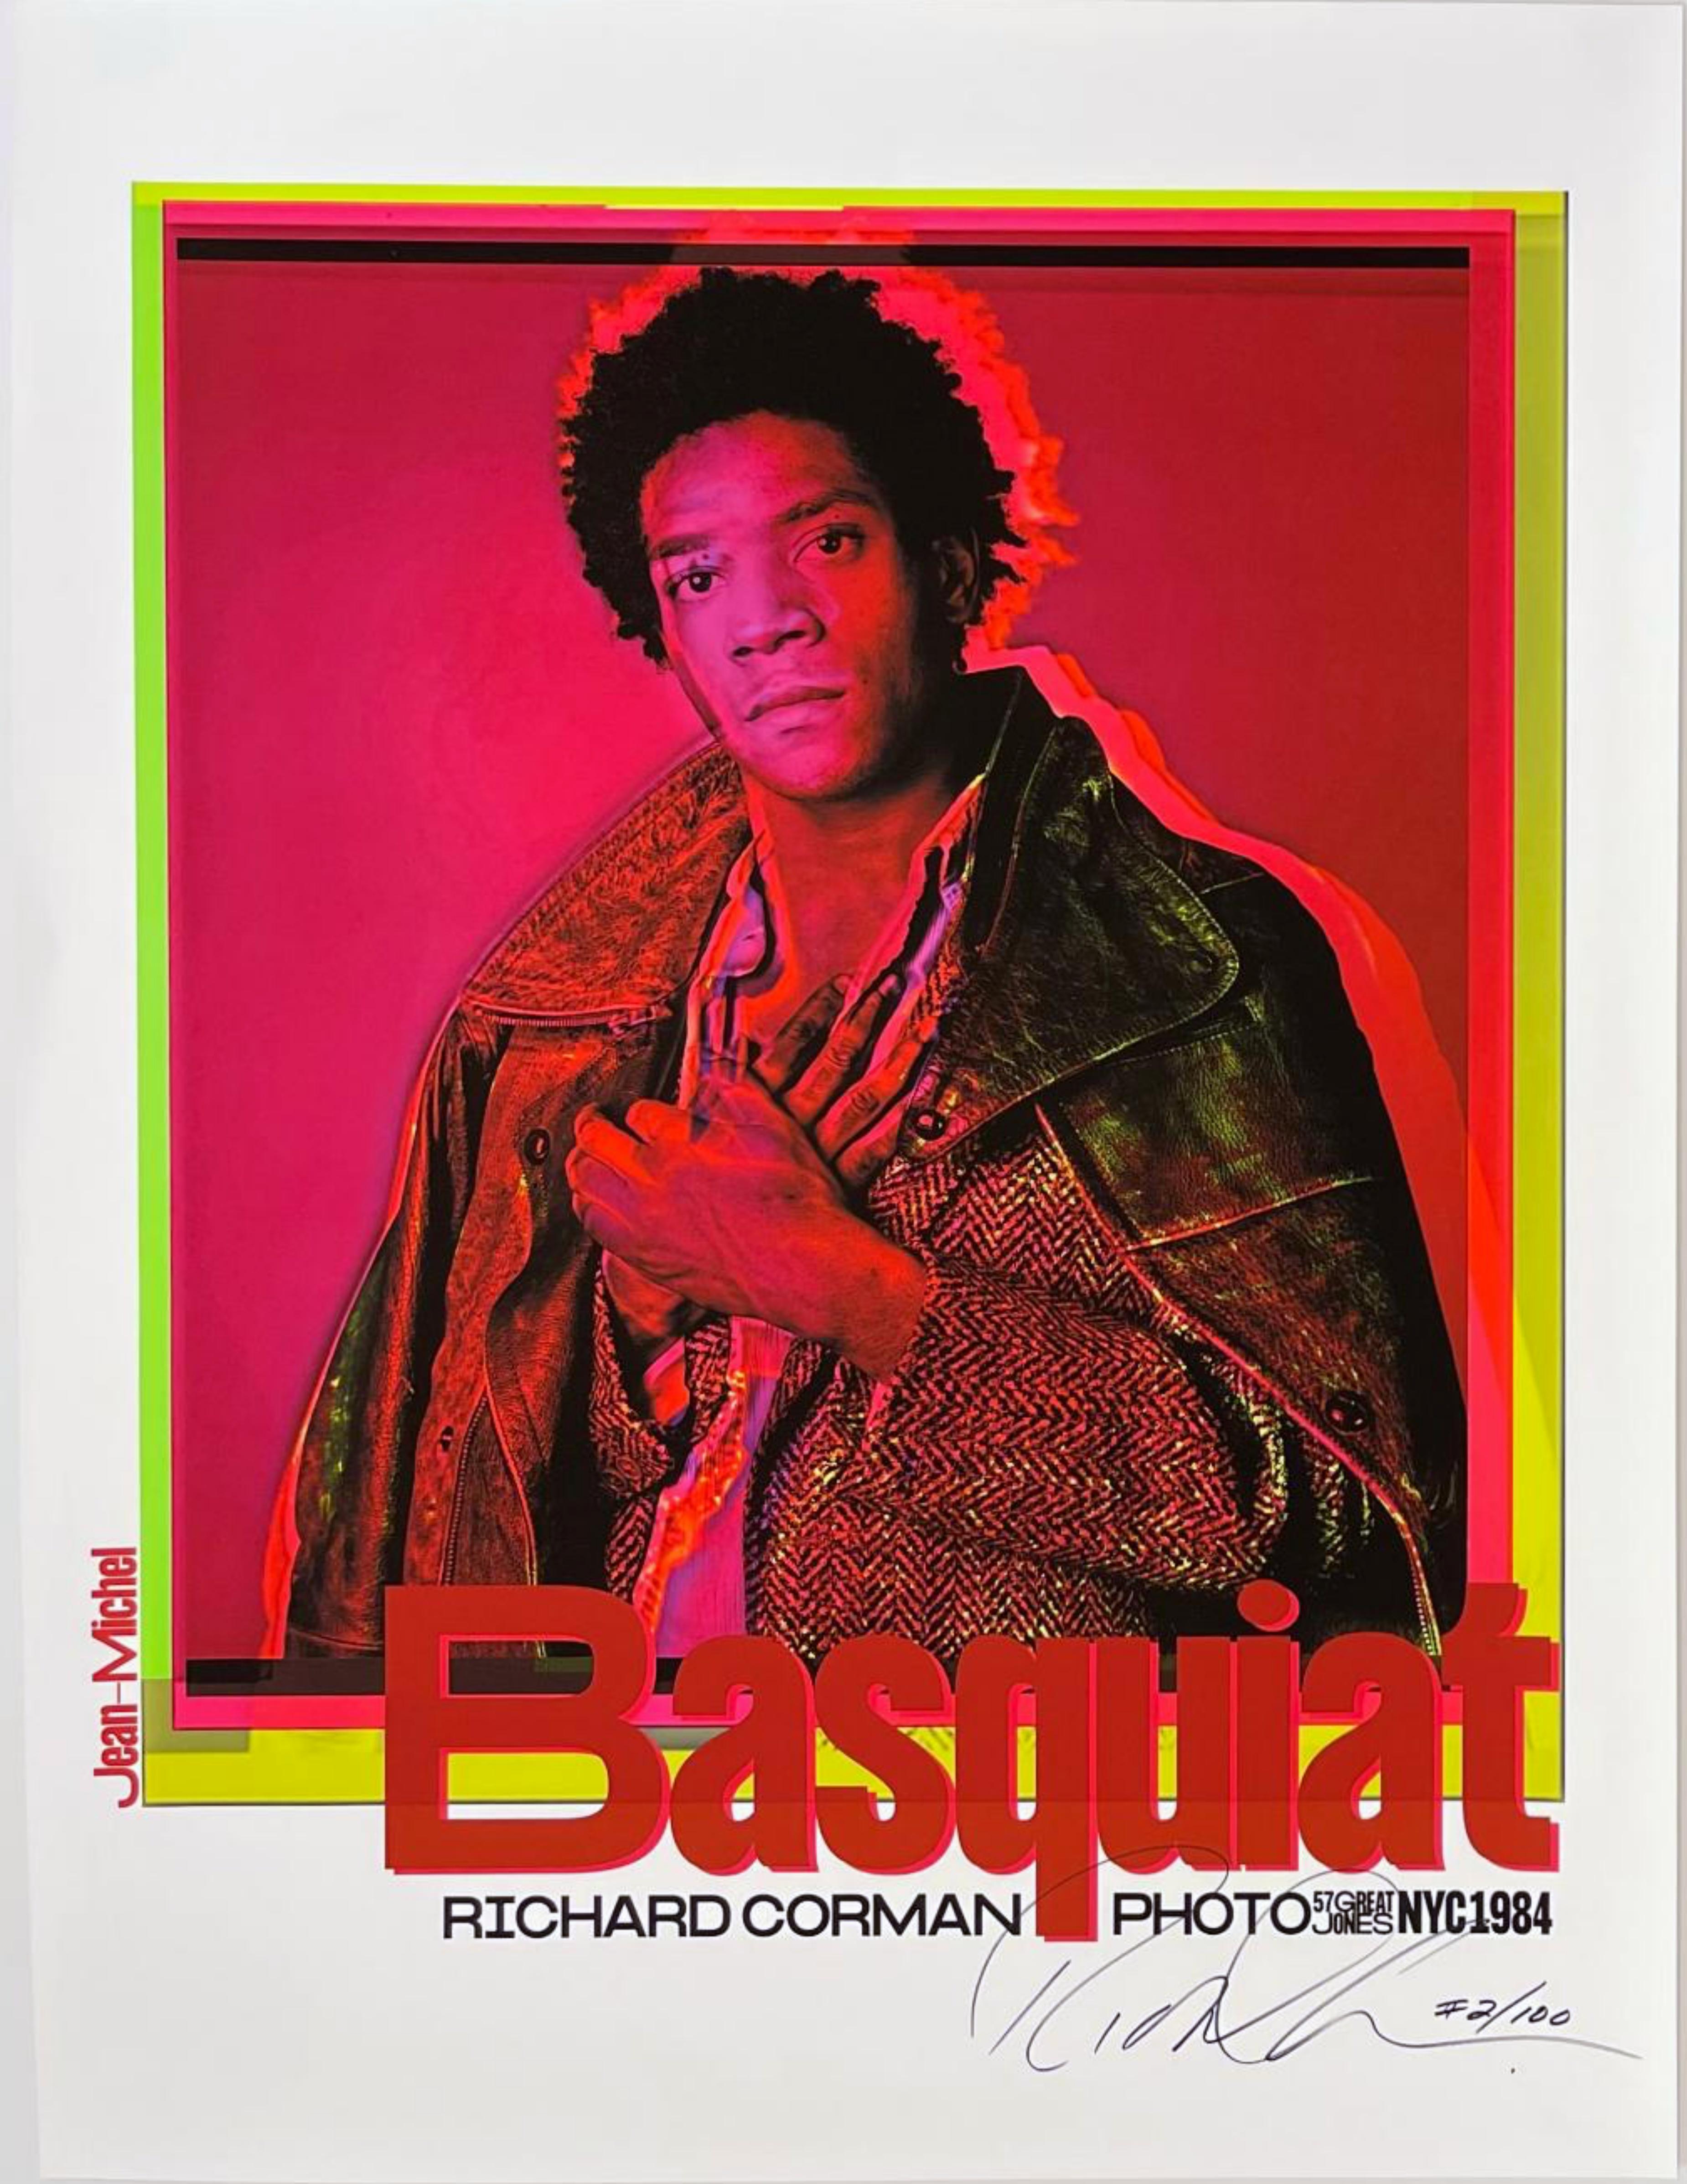 Richard Corman
Jean-Michel Basquiat 1984 (rot), 2020
Offsetlithografie-Plakat auf farbigem Archivierungspigmentpapier
Signiert und nummeriert 2/100 von Richard Corman mit silbernem Edding auf der Vorderseite
32 × 24 Zoll
Ungerahmt
Dieses